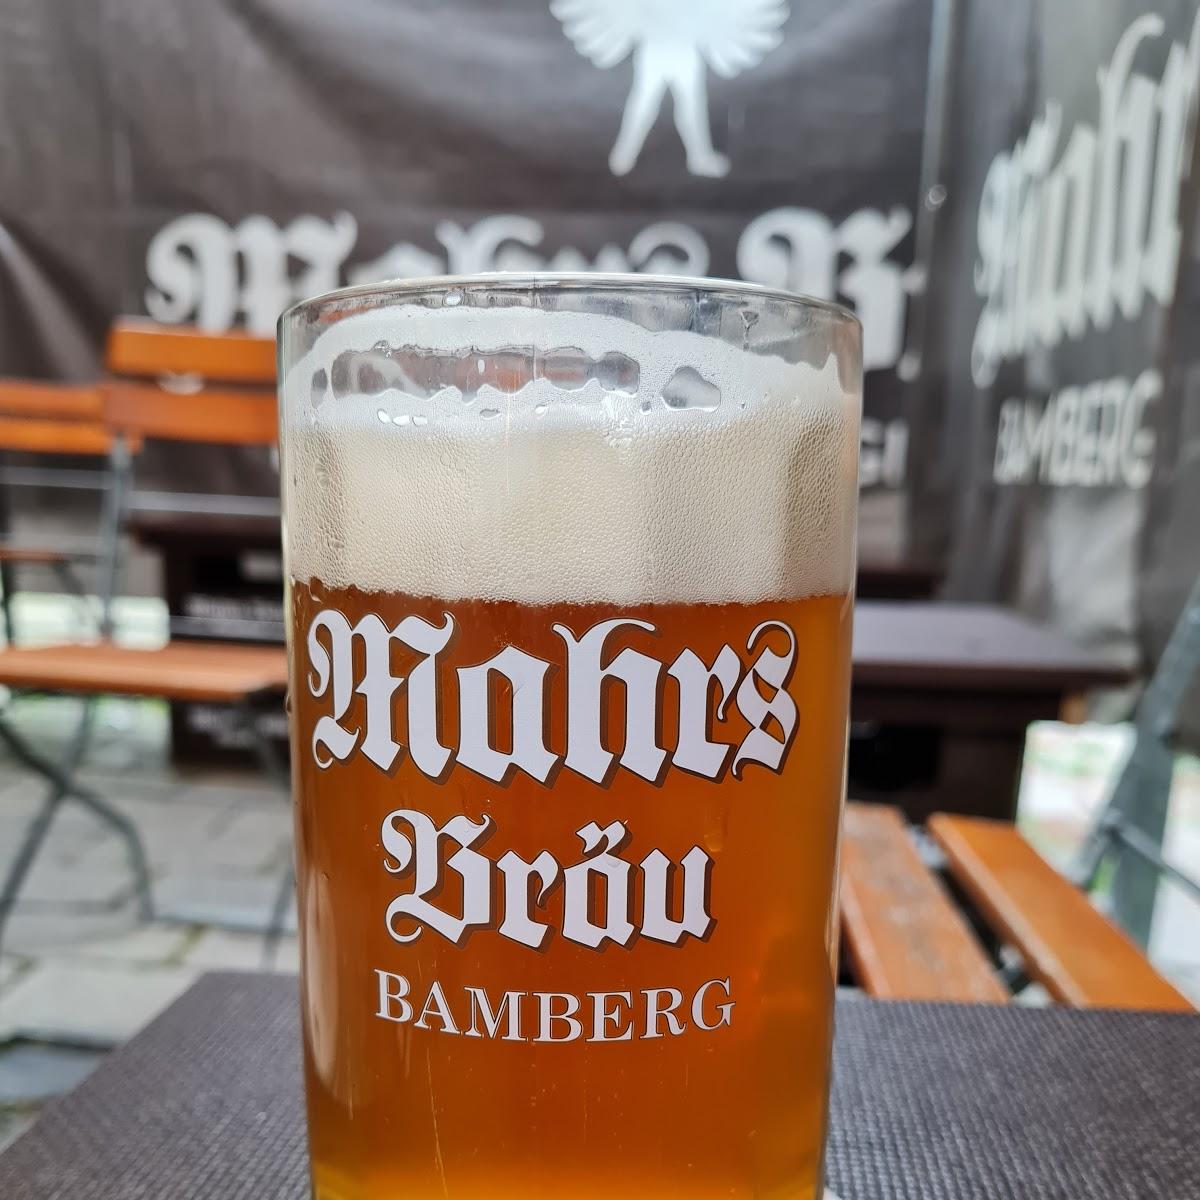 Restaurant "Brauerei Mahr" in Bamberg